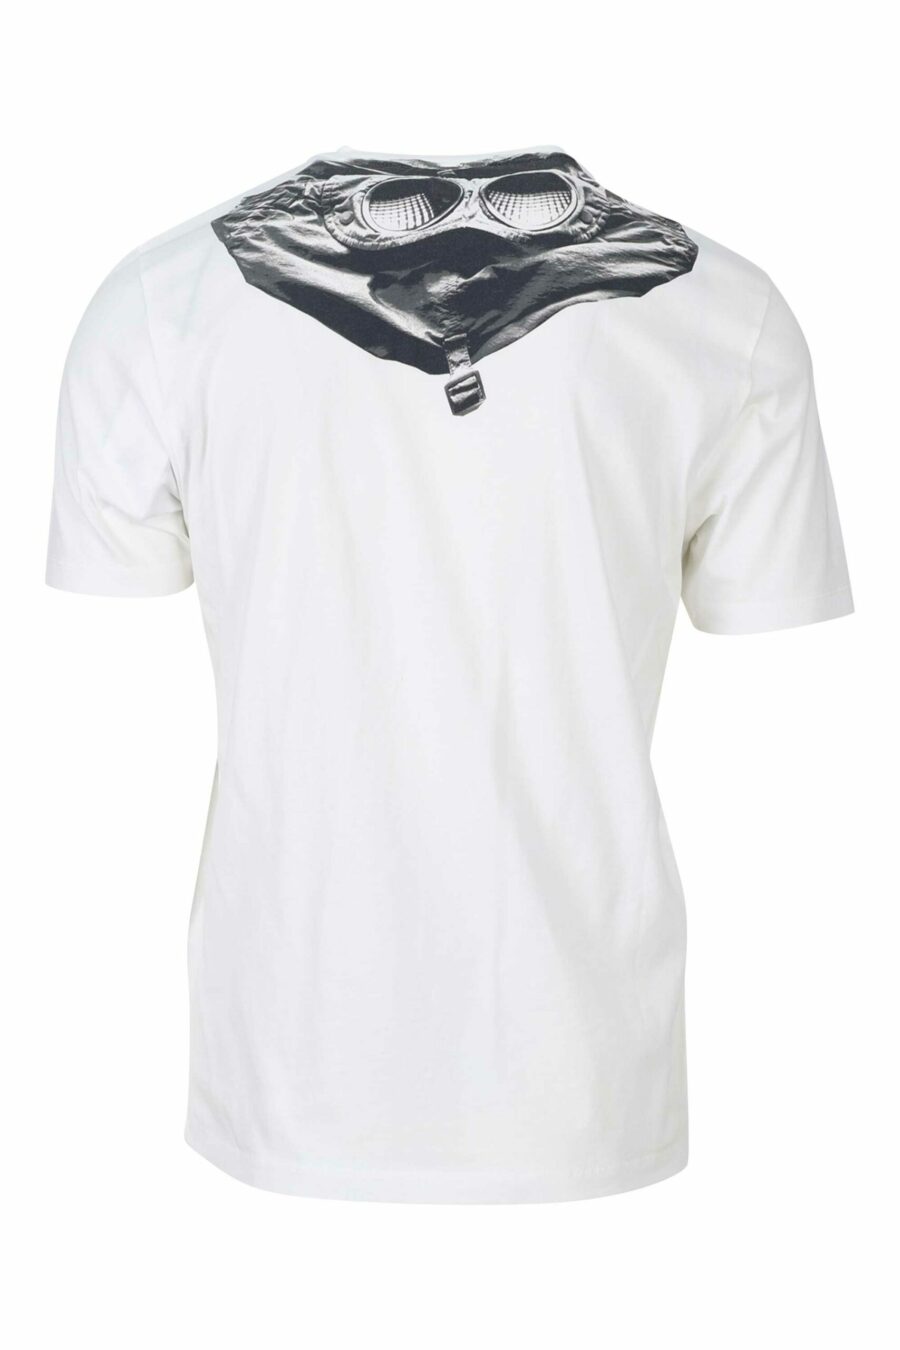 T-shirt blanc avec capuche et patch logo - 7620943570397 1 1 à l'échelle